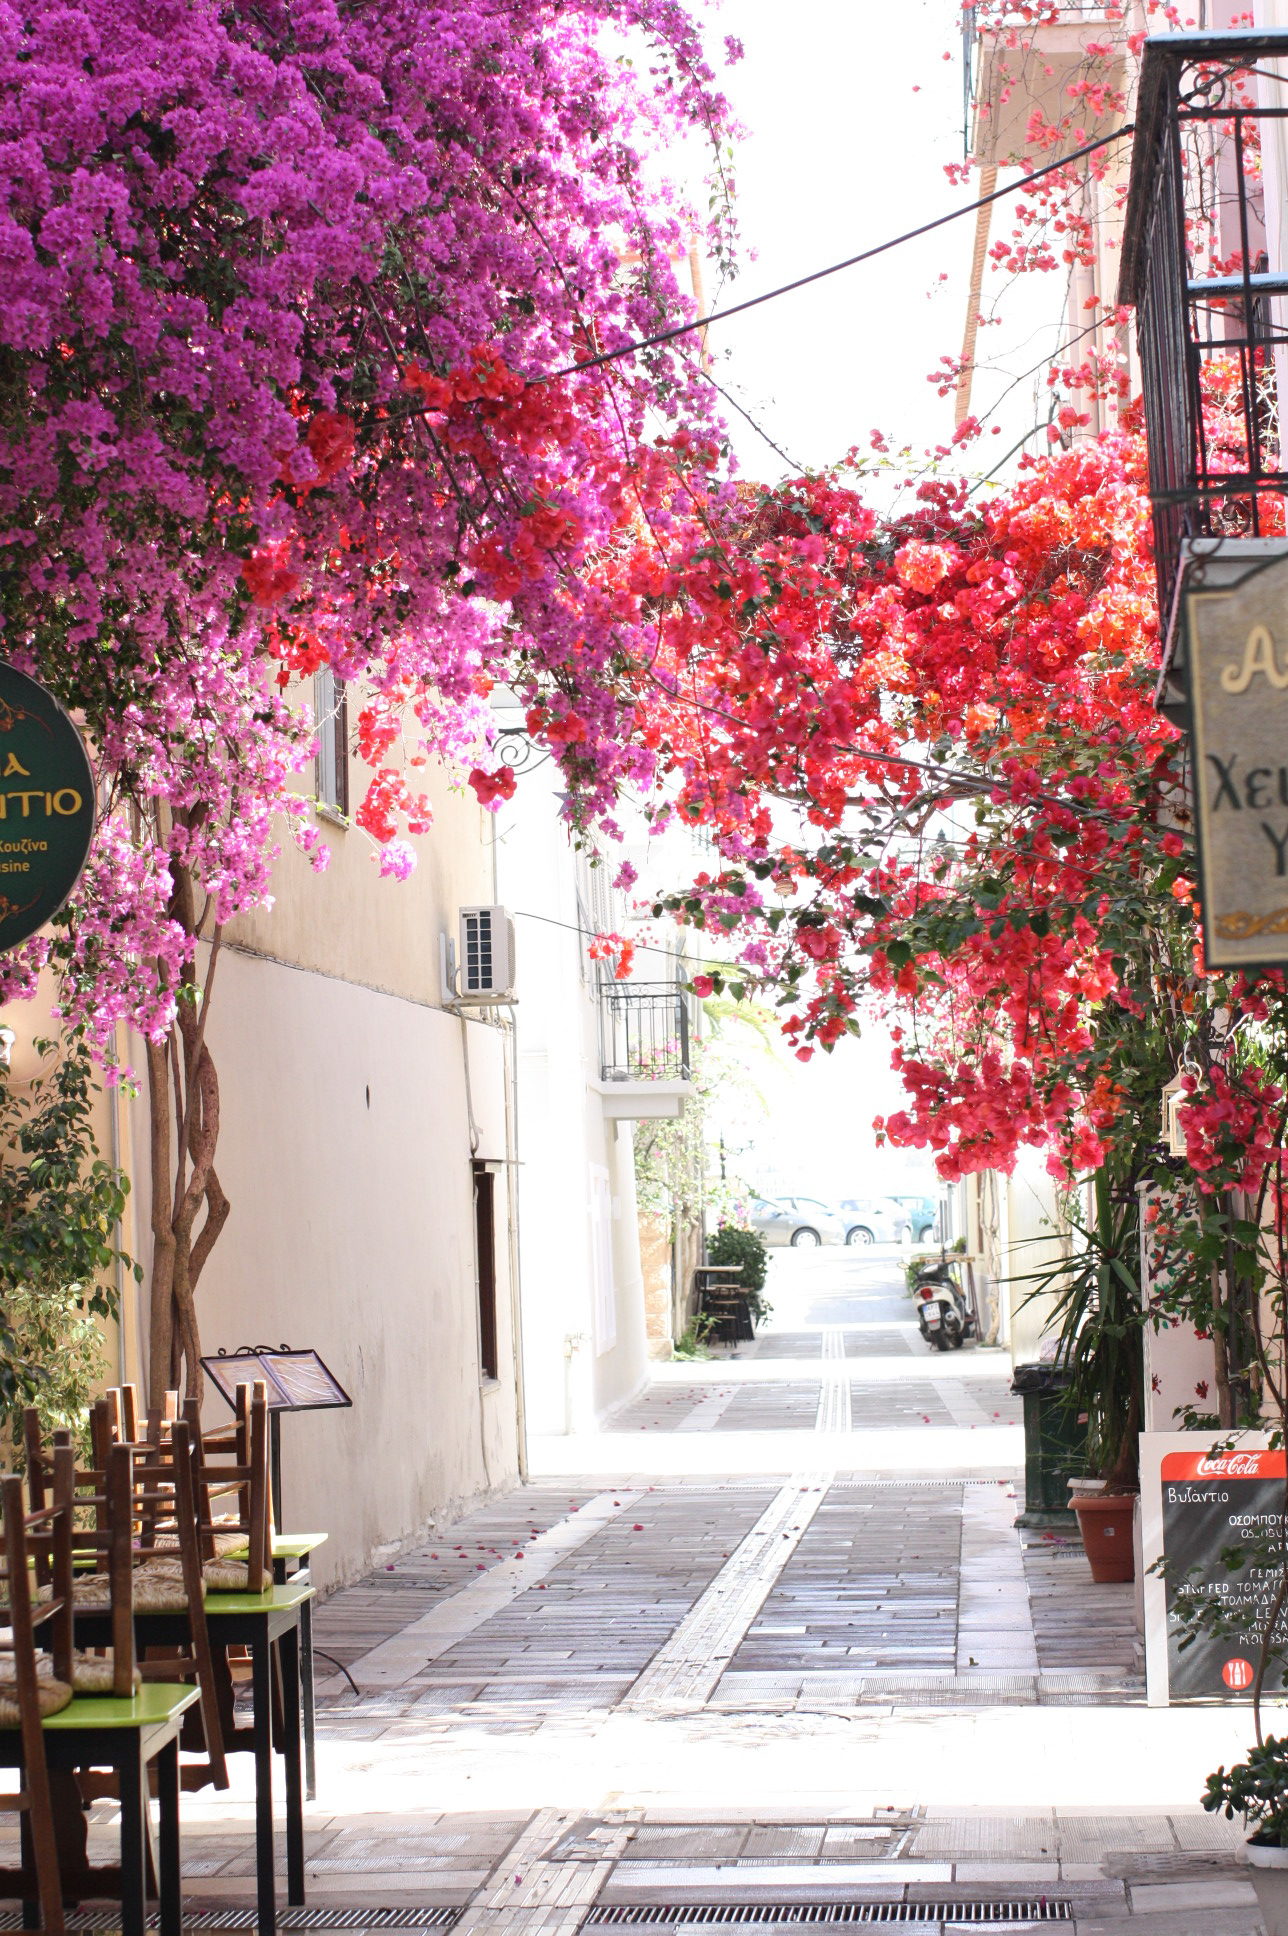 Nomad Luxuries in Nafplio, Greece under flowers in the mediterranean